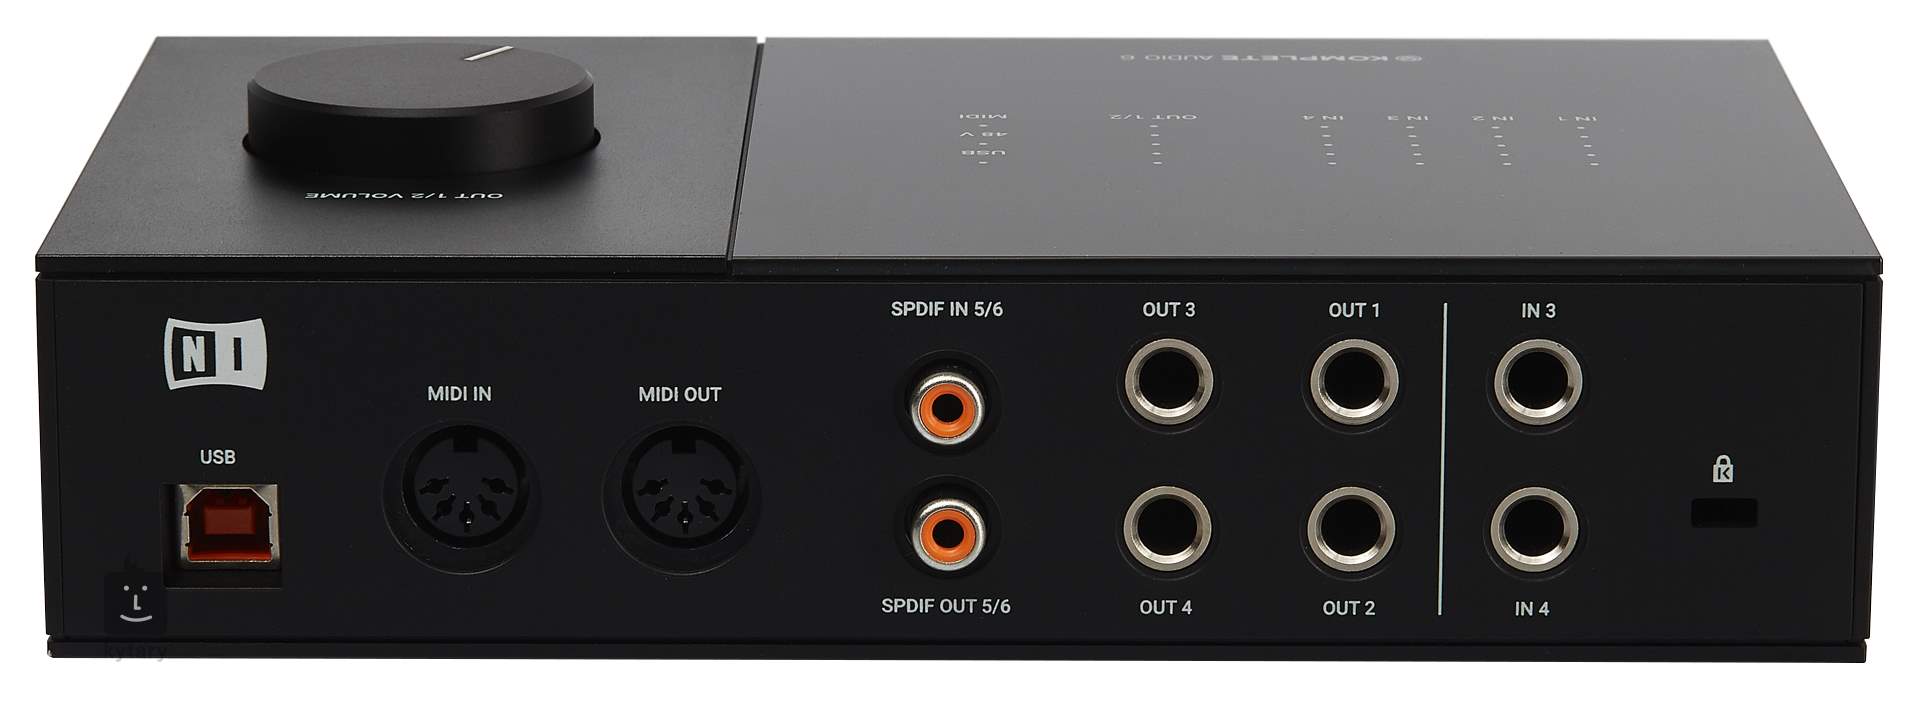 Importancia longitud mezclador NATIVE INSTRUMENTS Komplete Audio 6 MK2 Dispositivo de audio USB